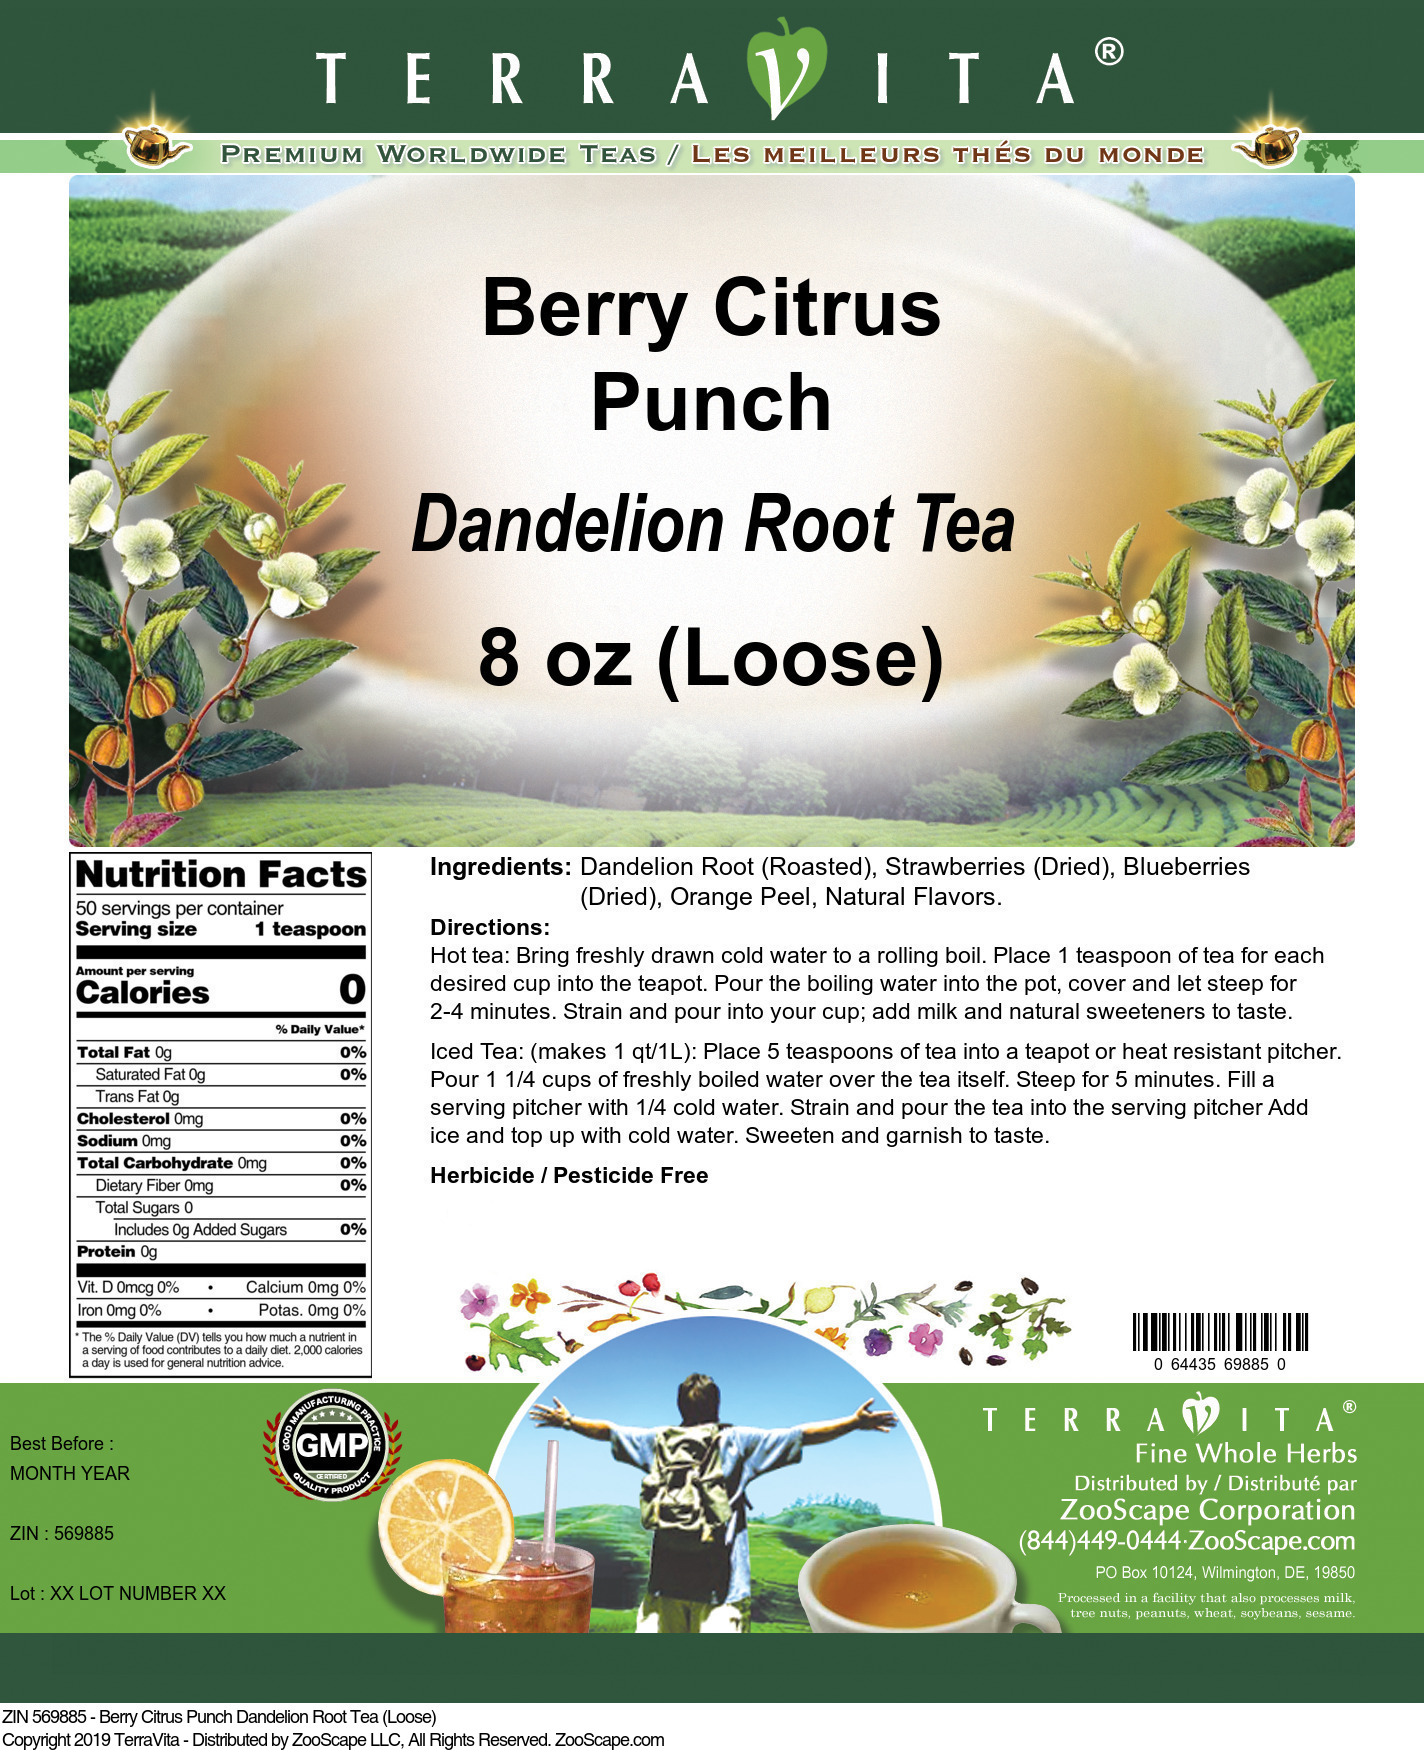 Berry Citrus Punch Dandelion Root Tea (Loose) - Label